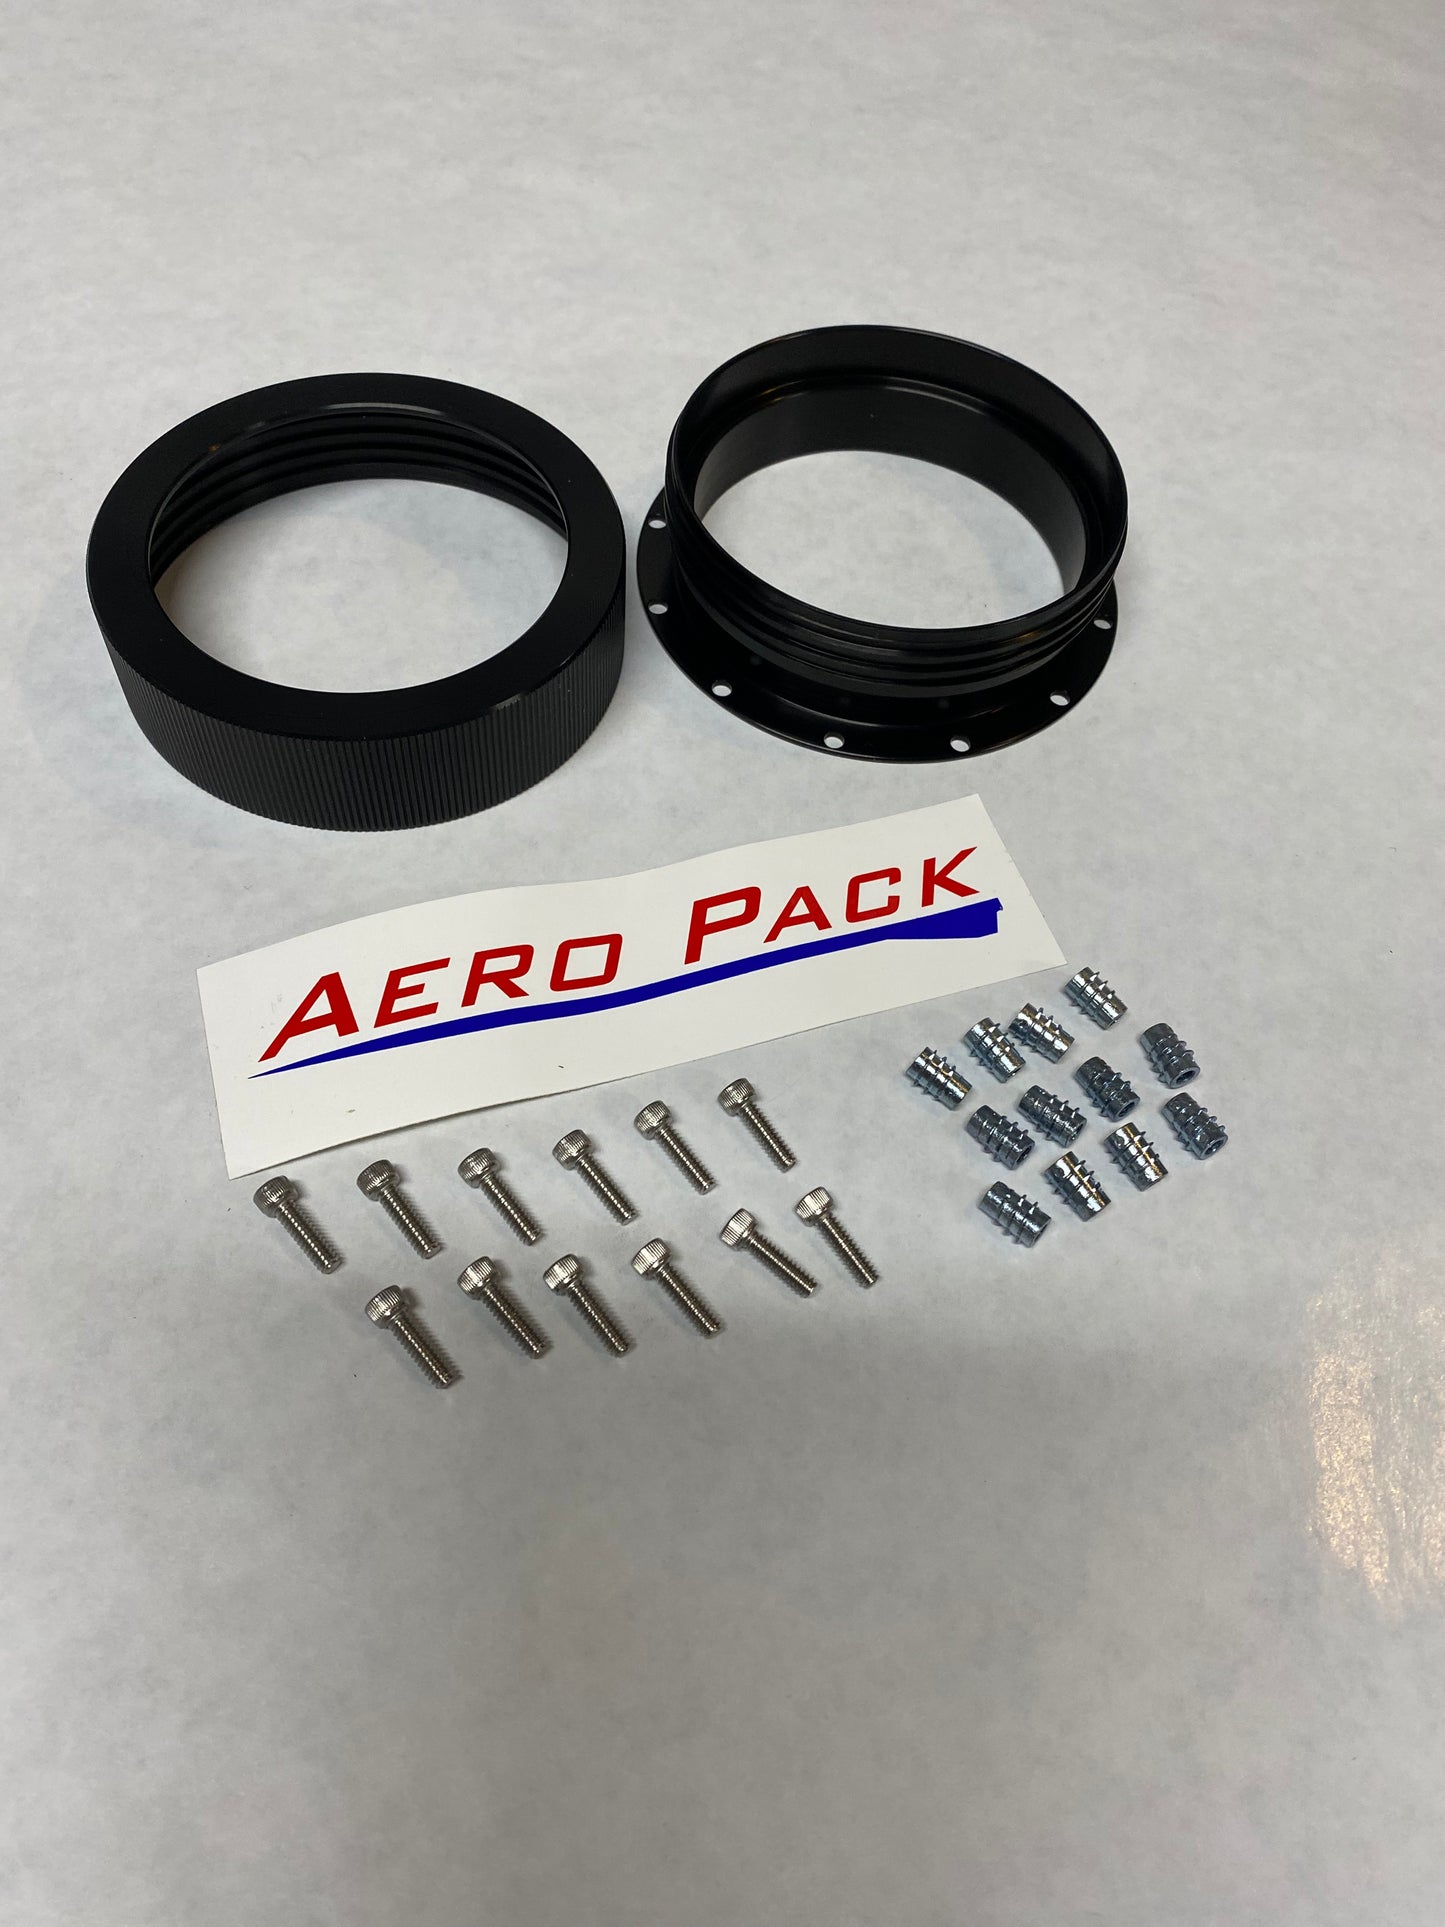 RA75 Aero Pack 75mm Retainer Flanged